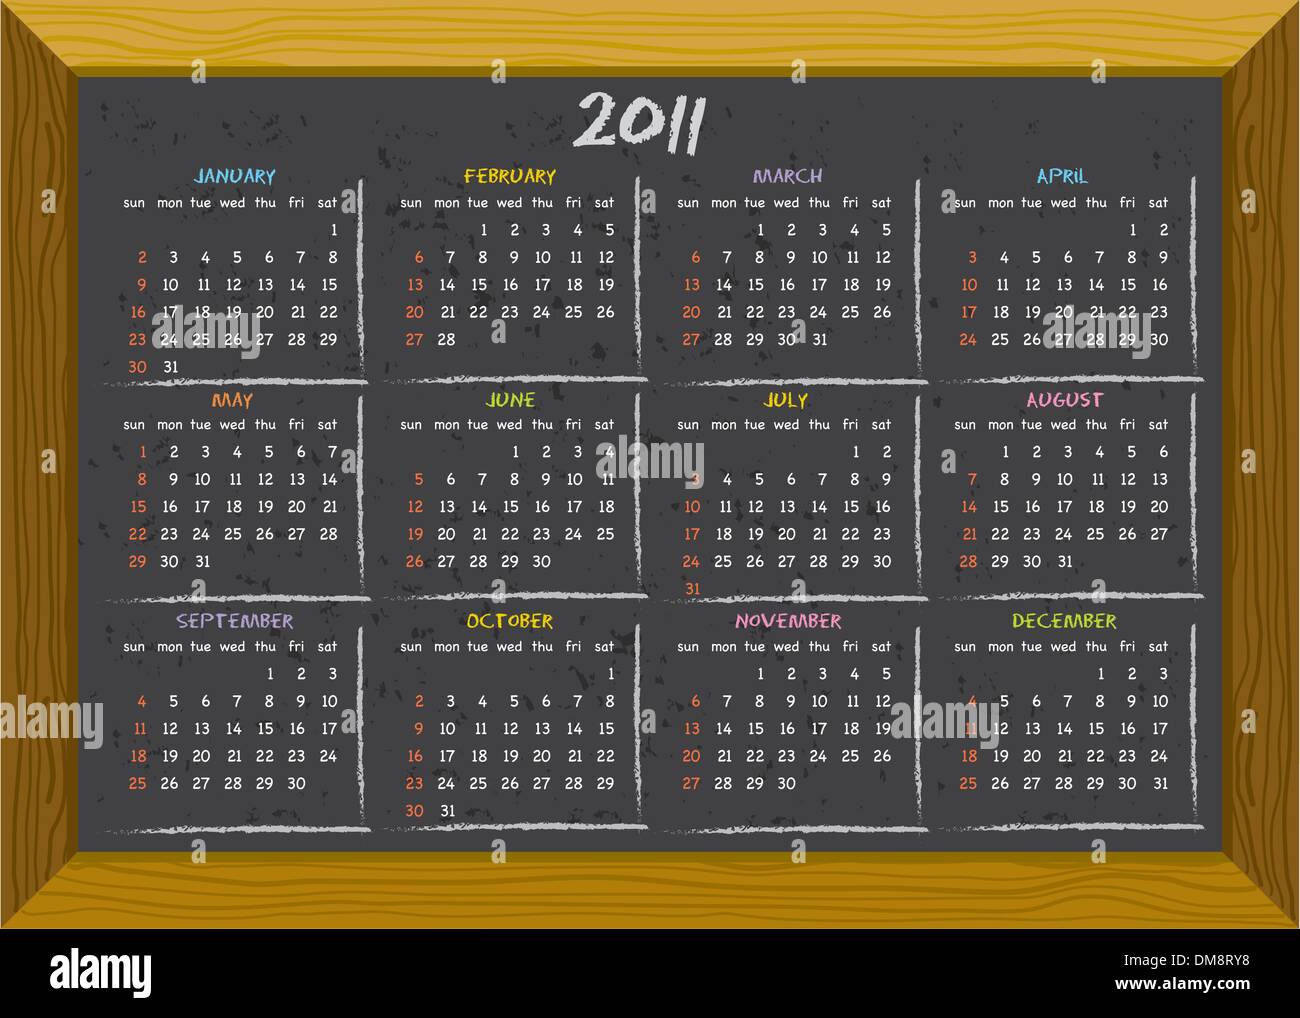 2011 calendar chalkboard style Stock Vector